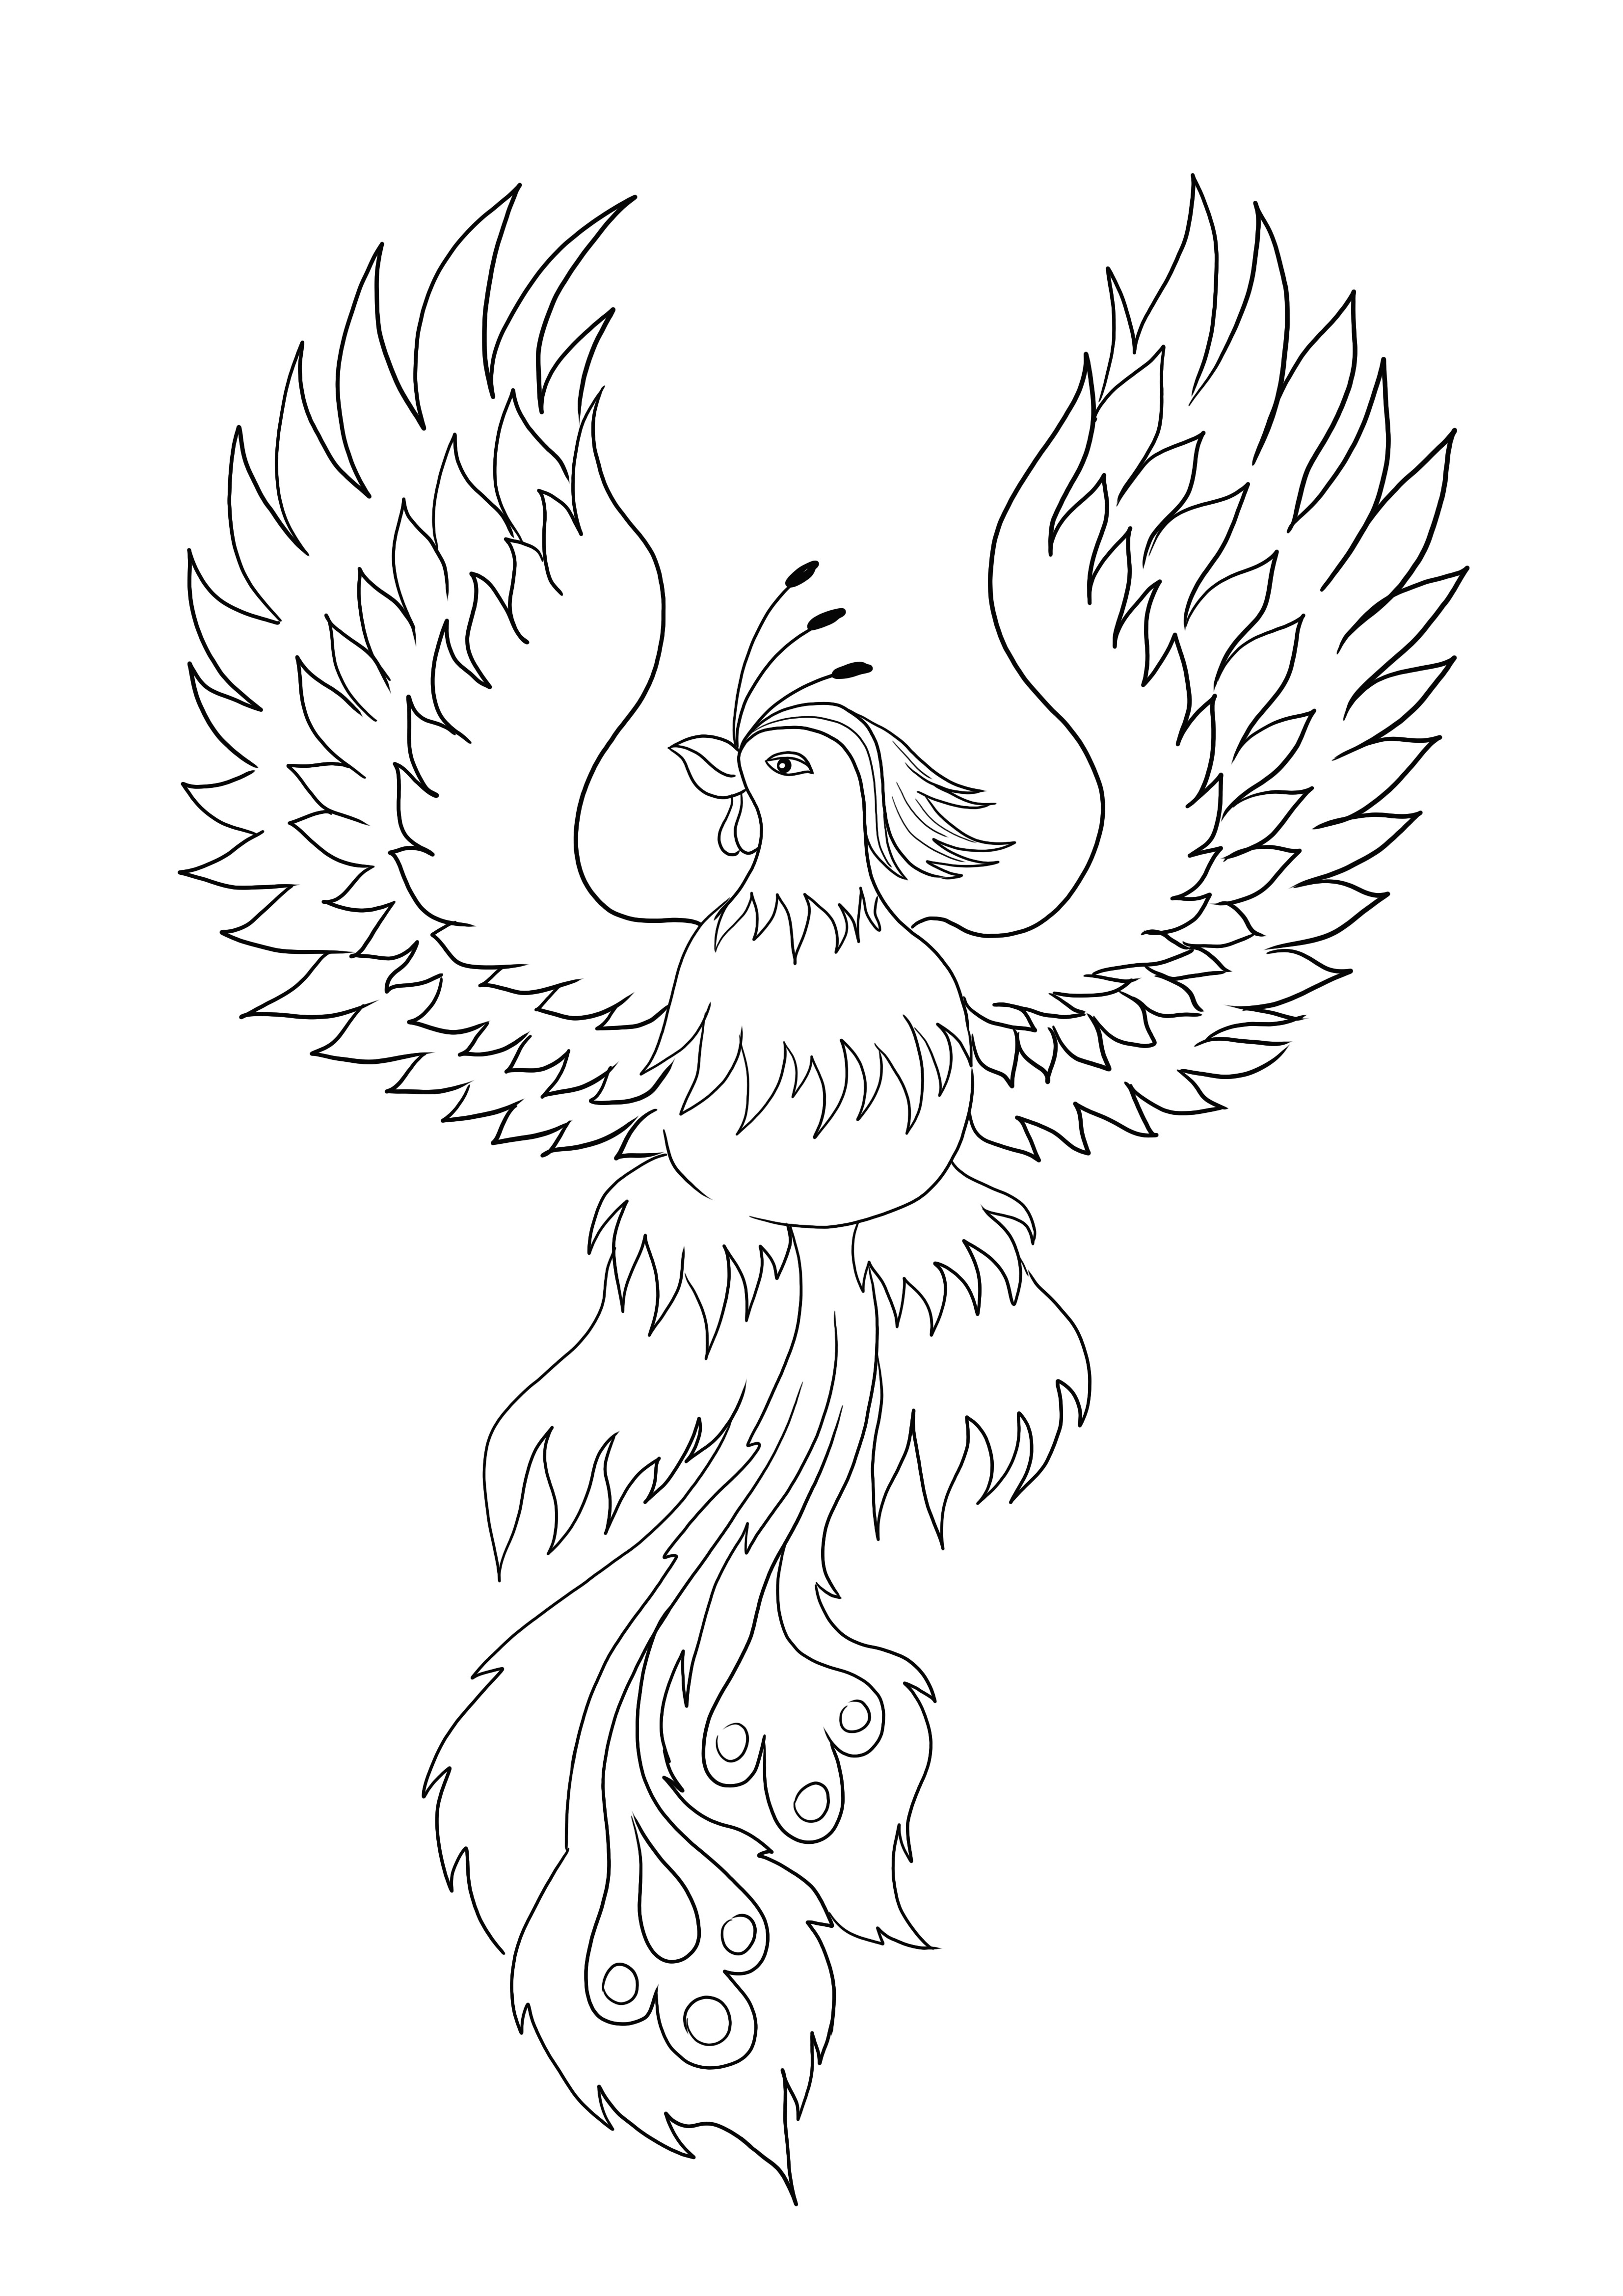 A gyönyörű Phoenix madár készen áll az ingyenes színezésre és nyomtatásra